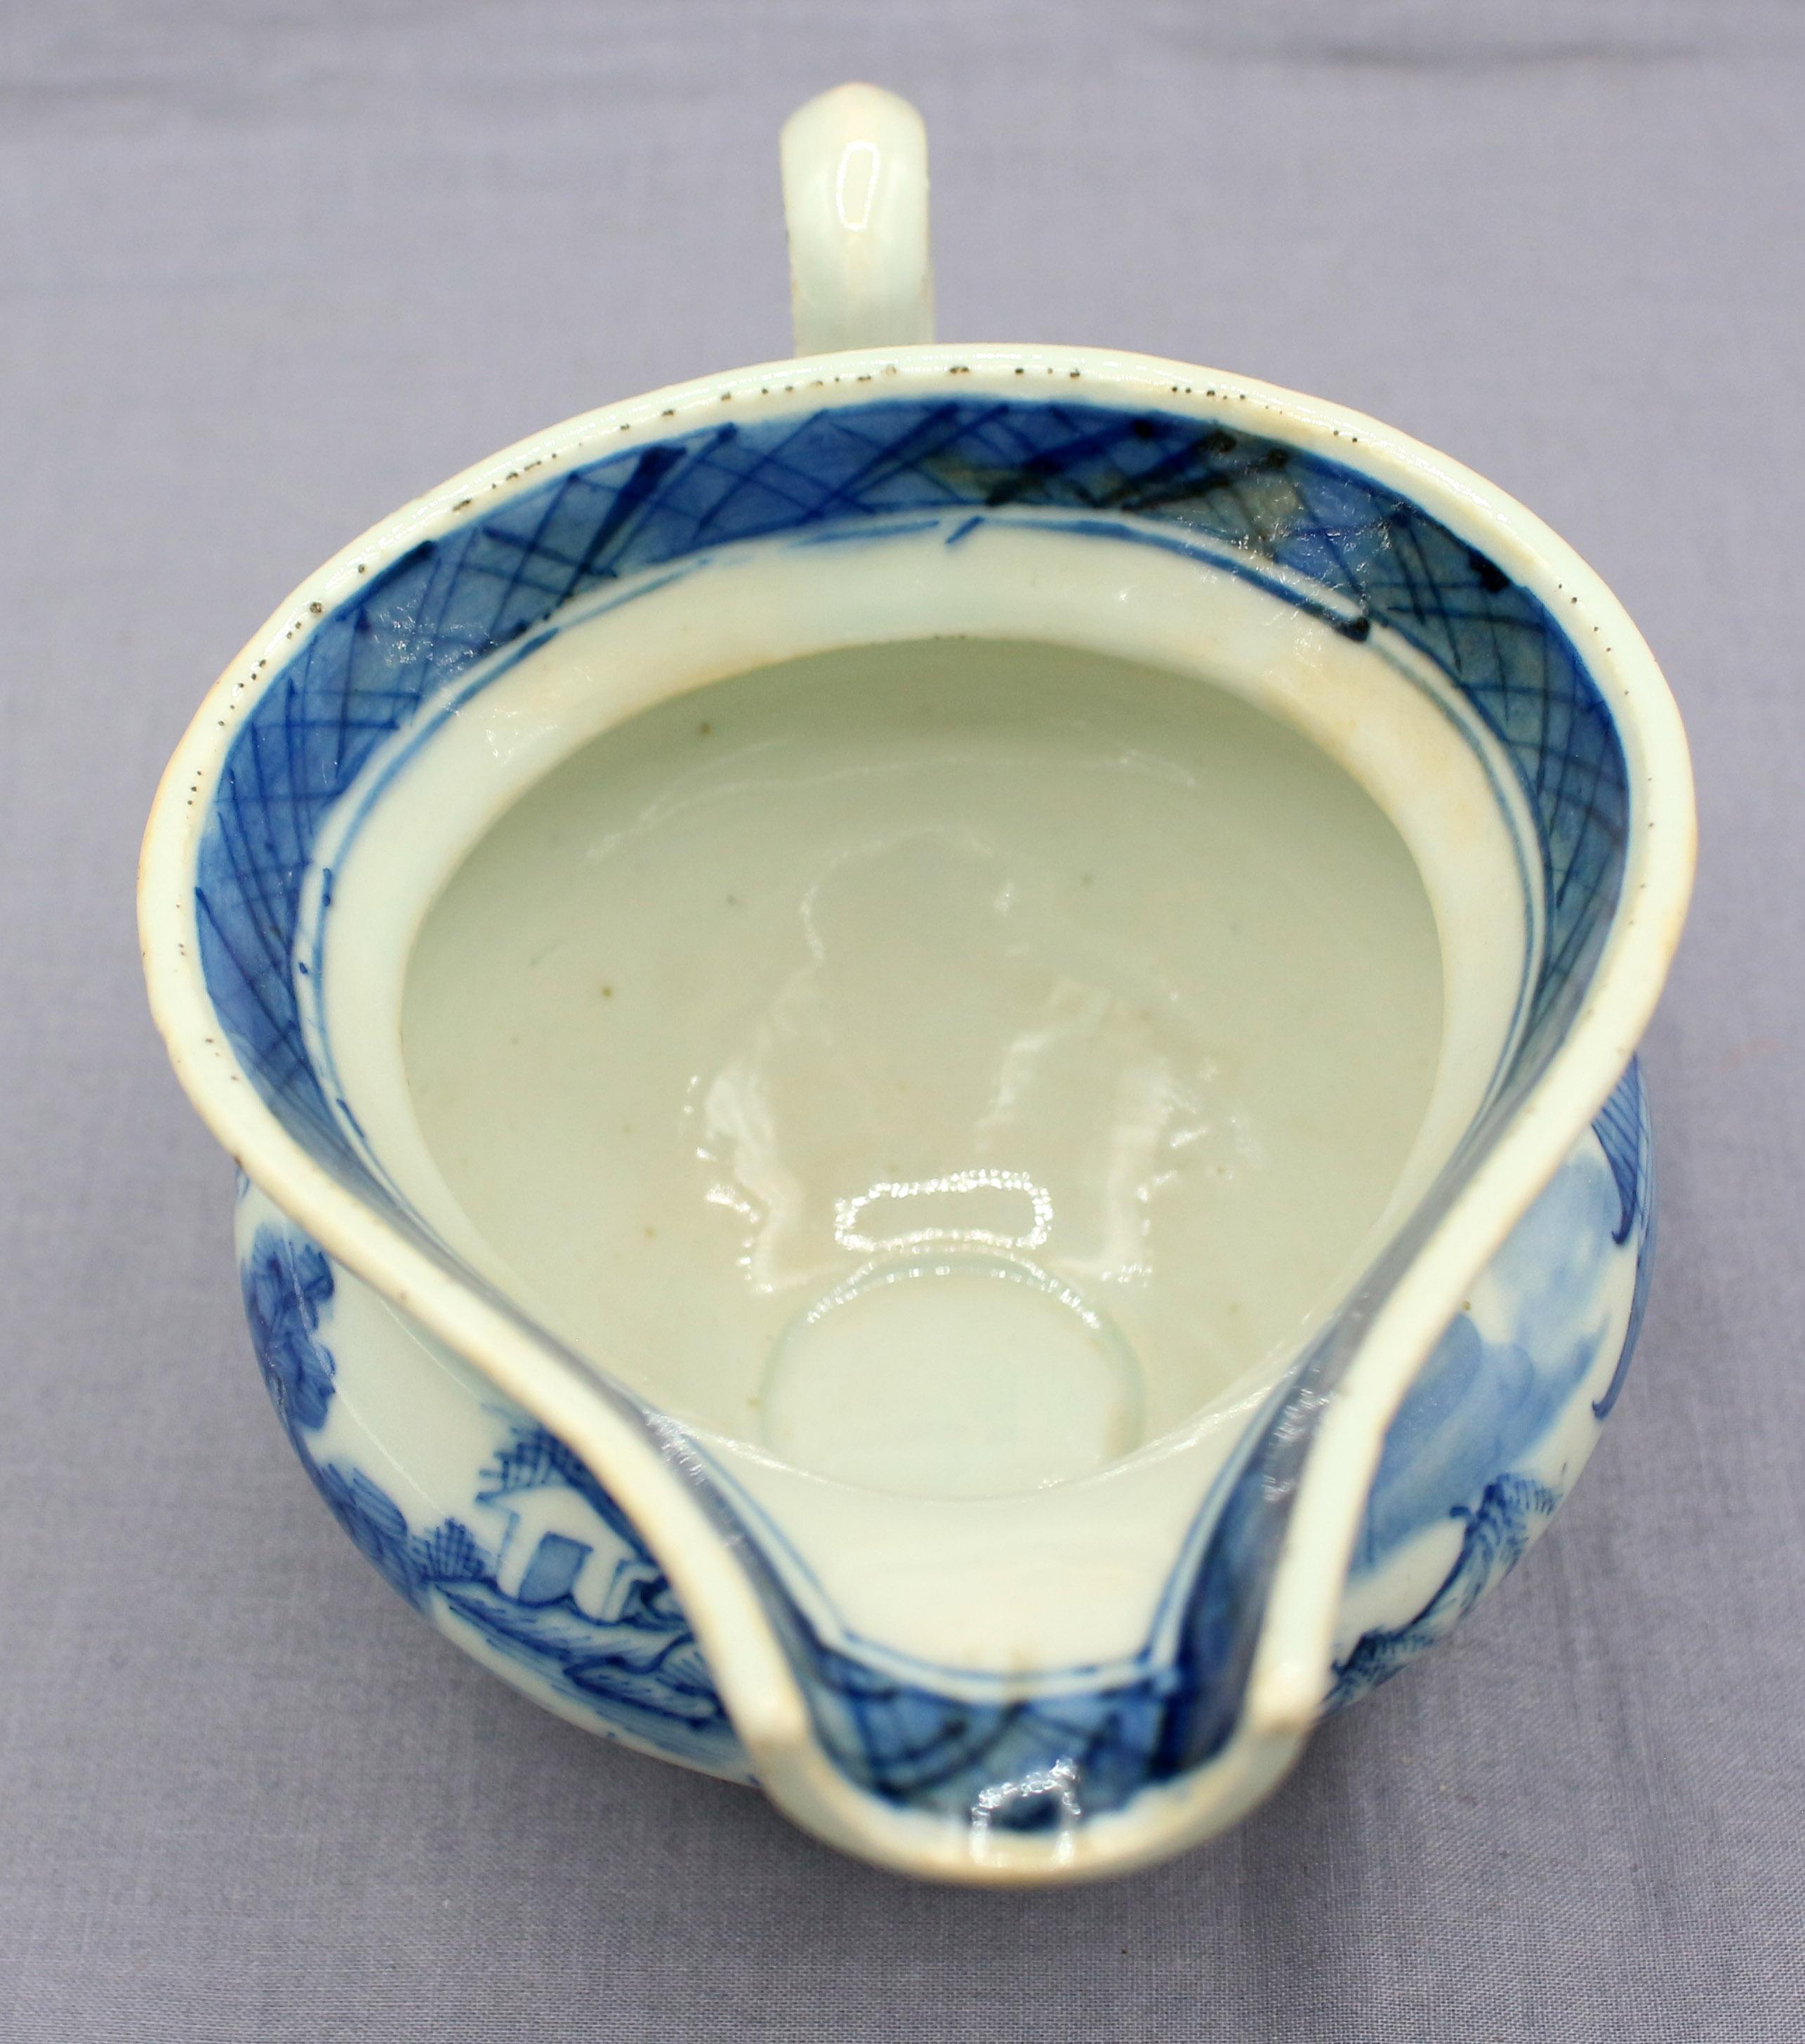 CIRCA 1830 Blaue Kanton-Sauciere, chinesisches Exportporzellan. Helmform; Schlaufengriff. Hellblaue Farbe. Interessante Glasur und Ofenfehler.
7